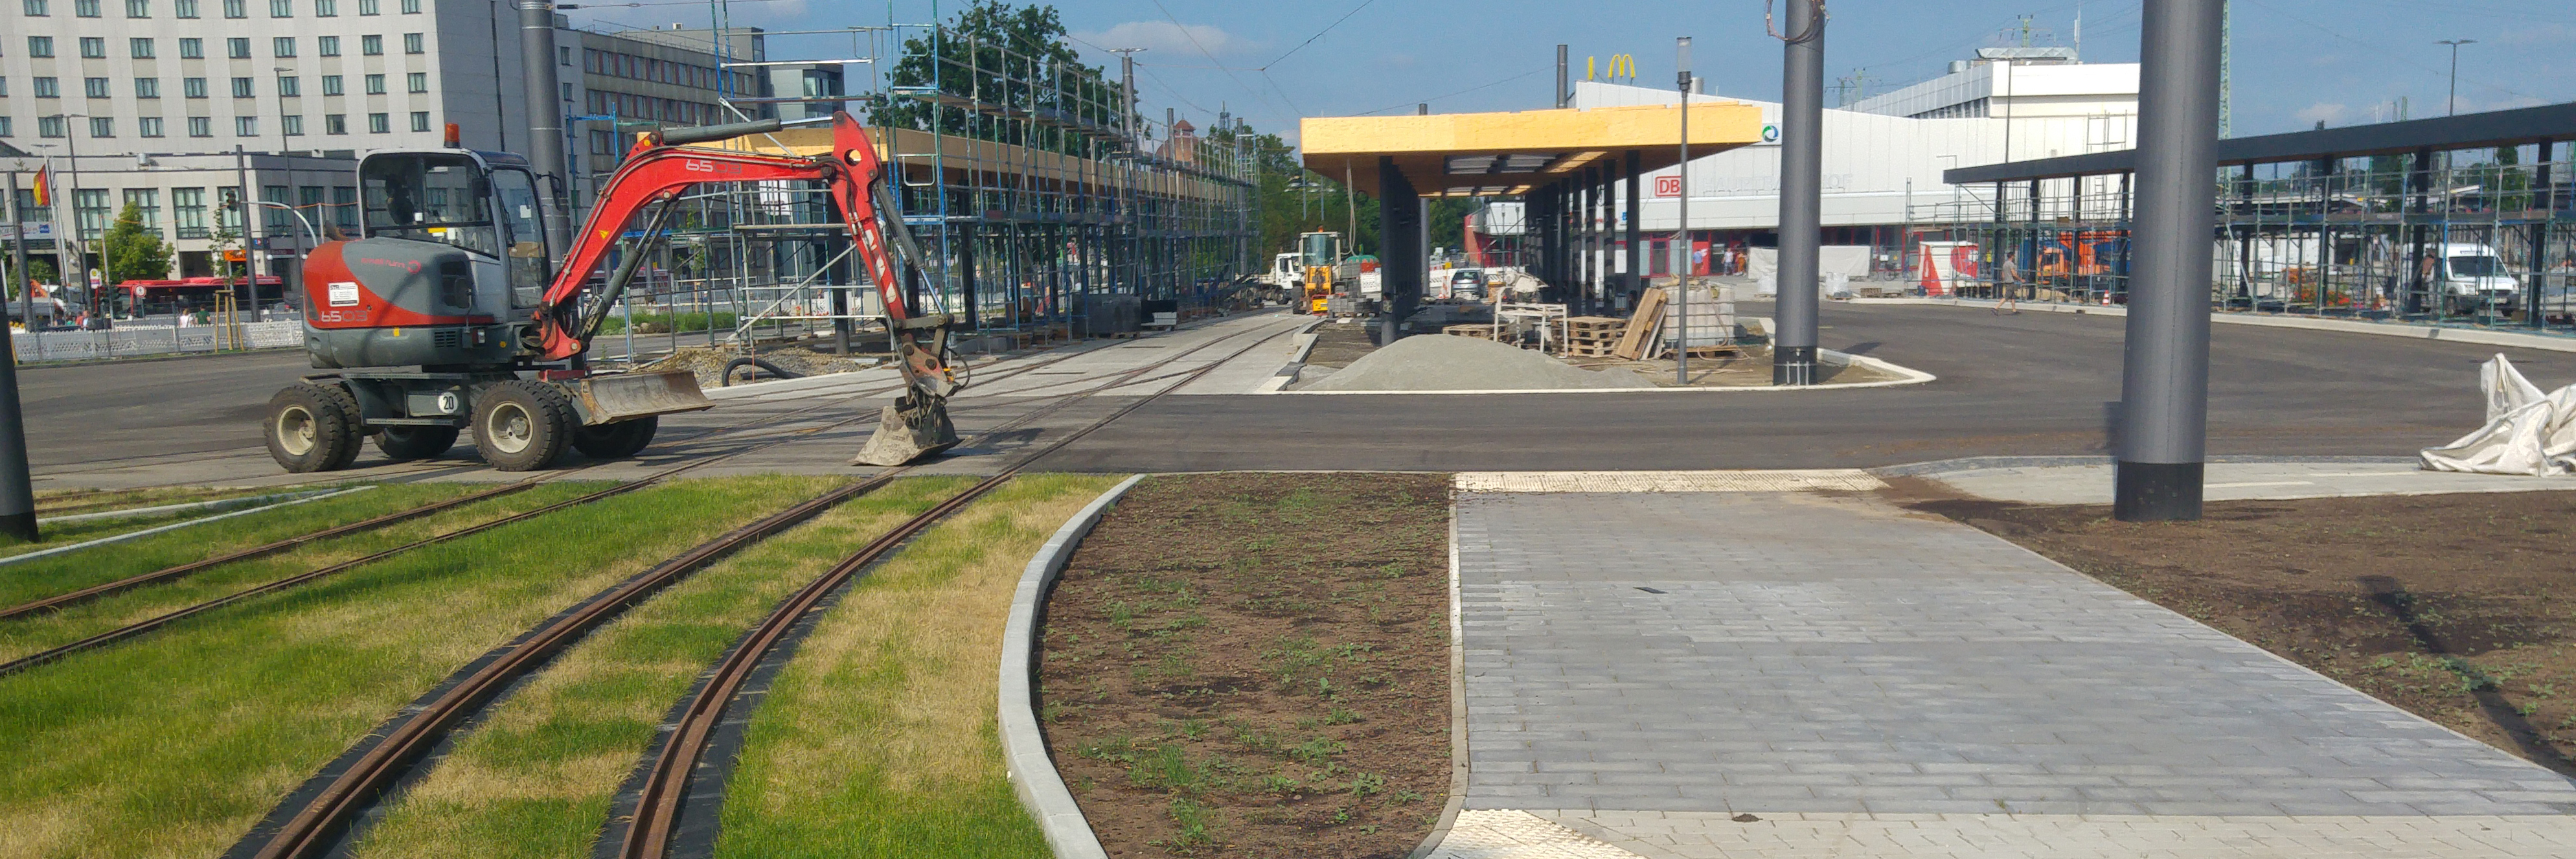 Planfestgestellt und dann gebaut - Der neue Bahnhofsvorplatz in Cottbus